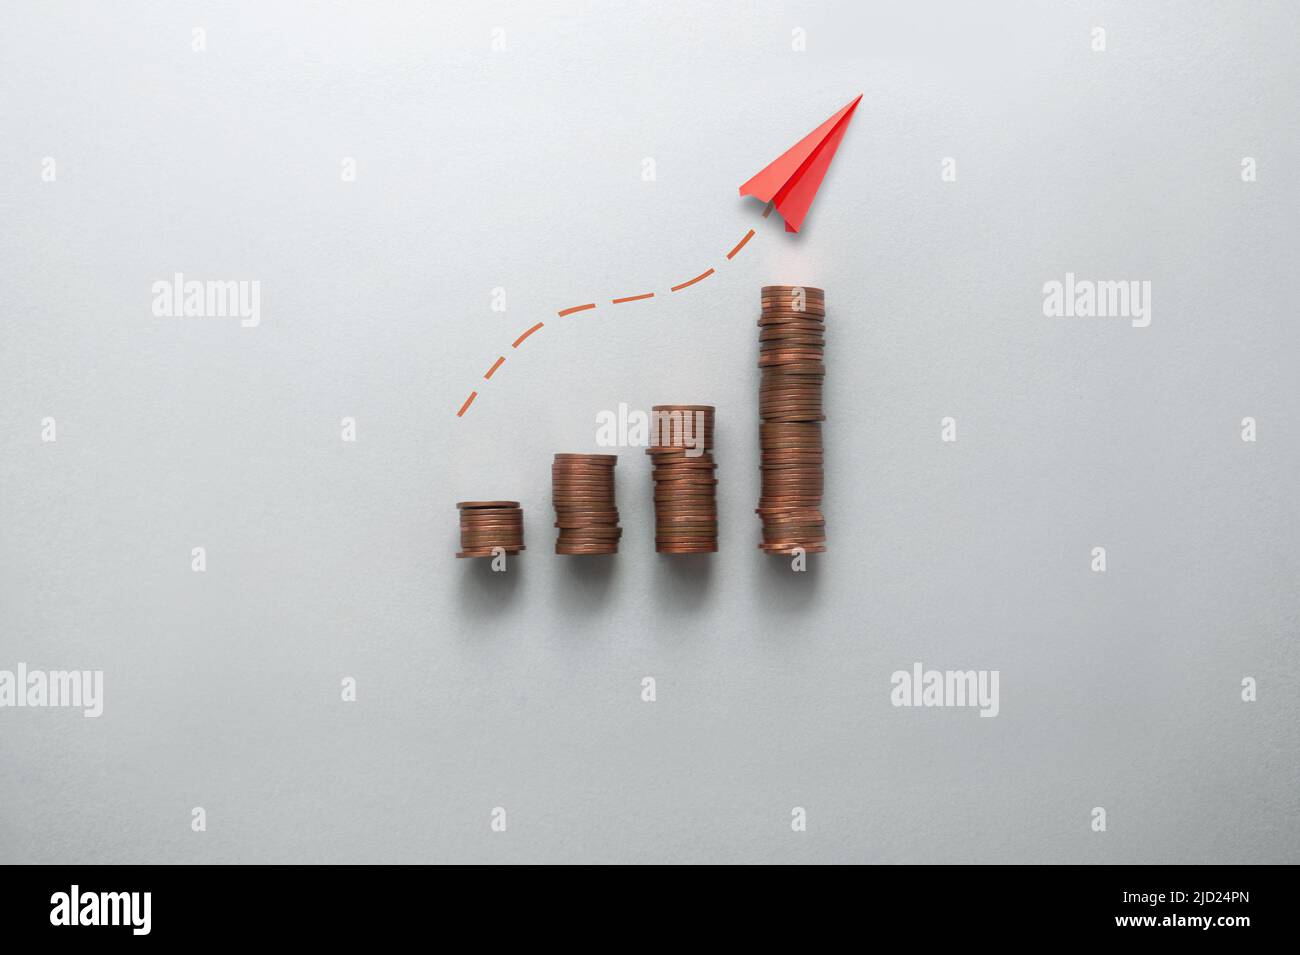 Concepto de aumento de la inflación, los costes y los precios, gráfico de negocios pilas de monedas con el papel de avión que se mueve hacia arriba Foto de stock